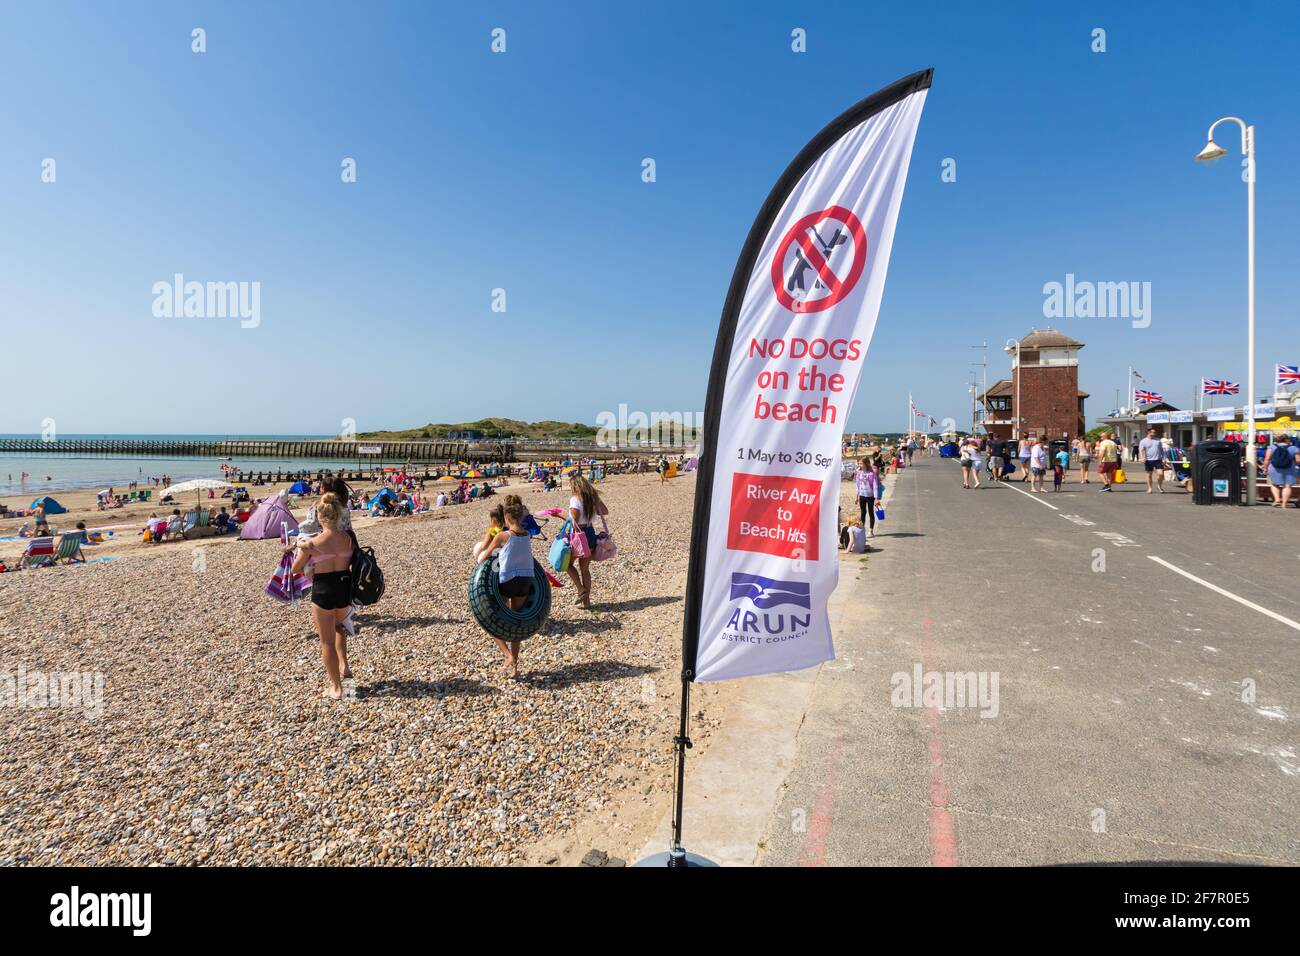 Una bandiera avvertimento che i cani non sono ammessi sulla spiaggia, sul lungomare in estate a Littlehampton, West Sussex, in Inghilterra, Regno Unito. Foto Stock